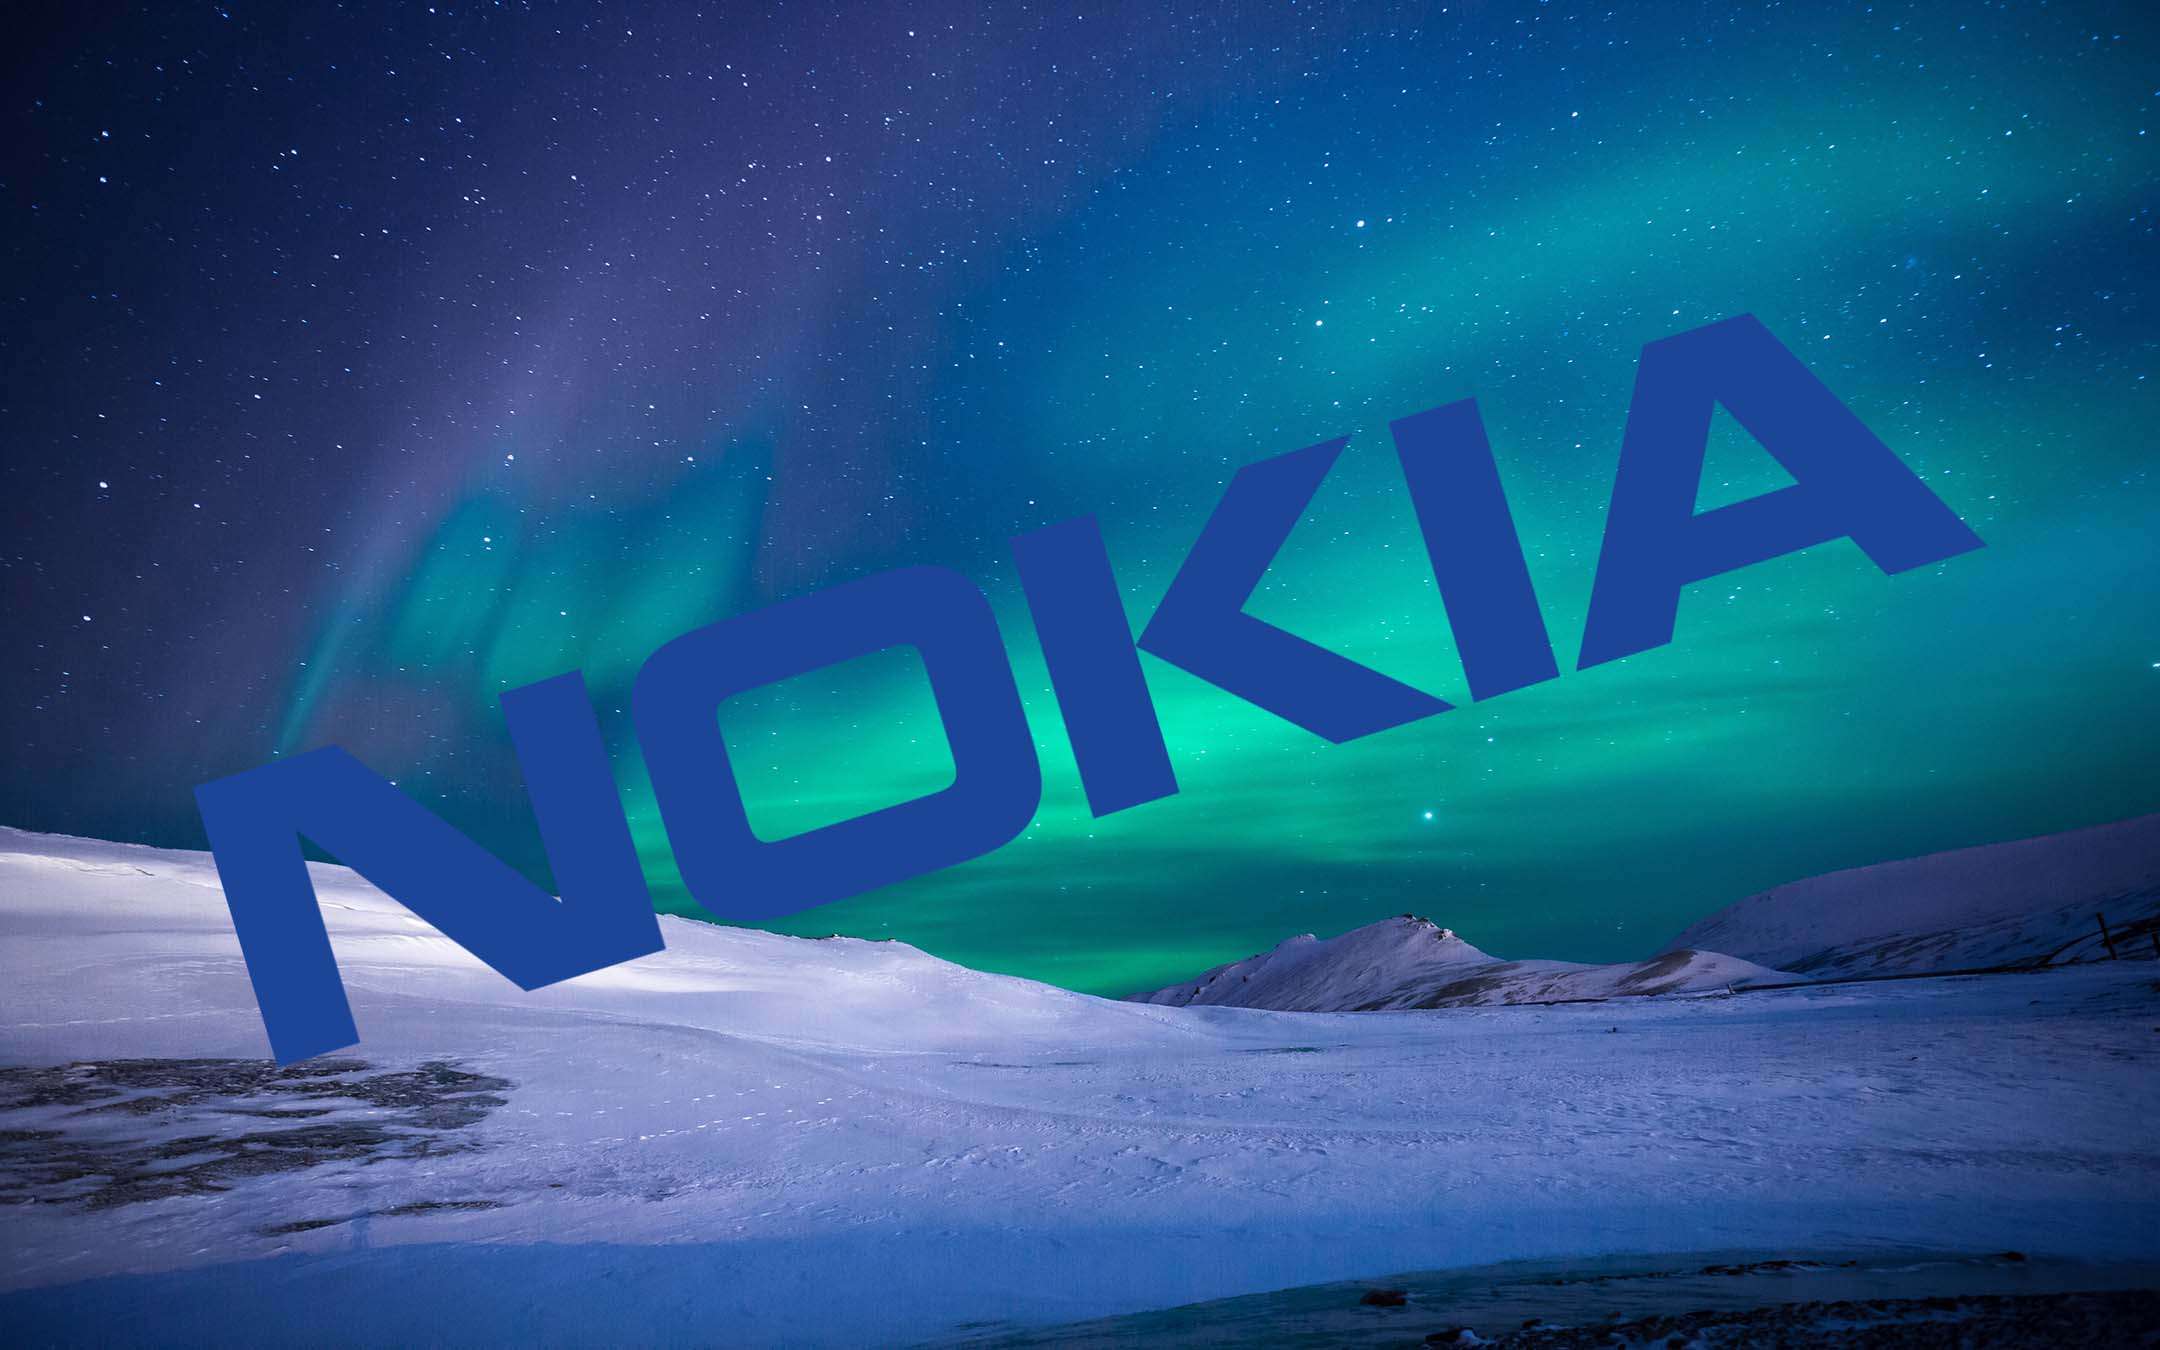 Nokia 9 Pure View in arrivo a fine gennaio 2019